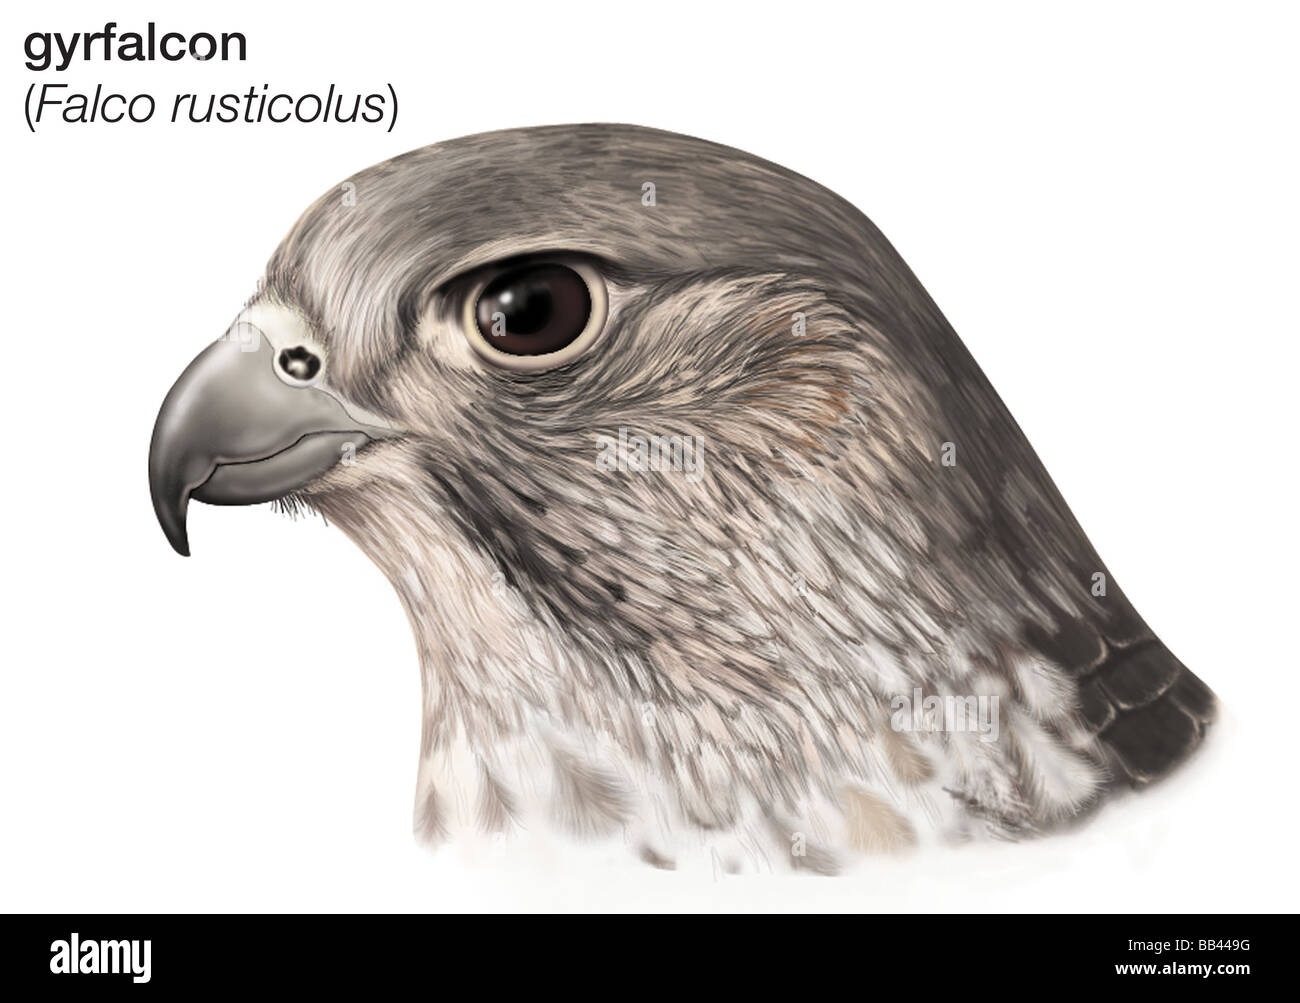 Testa di gyrfalcon (Falco rusticolus) Foto Stock